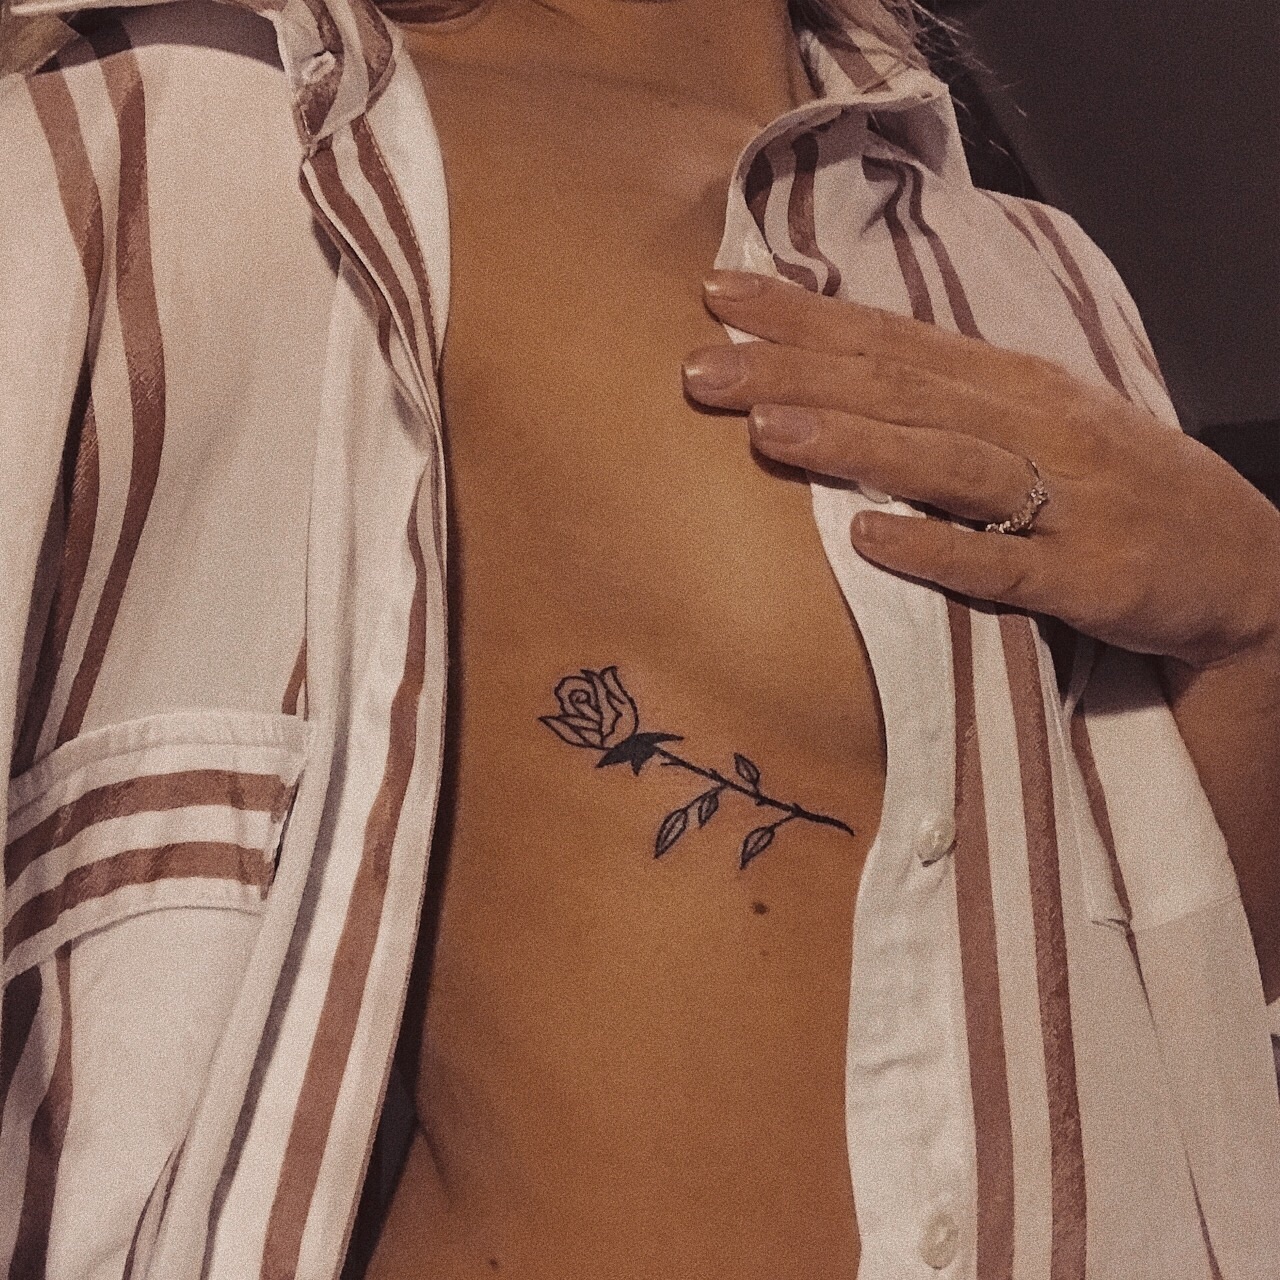 татуировка размера груди фото 53